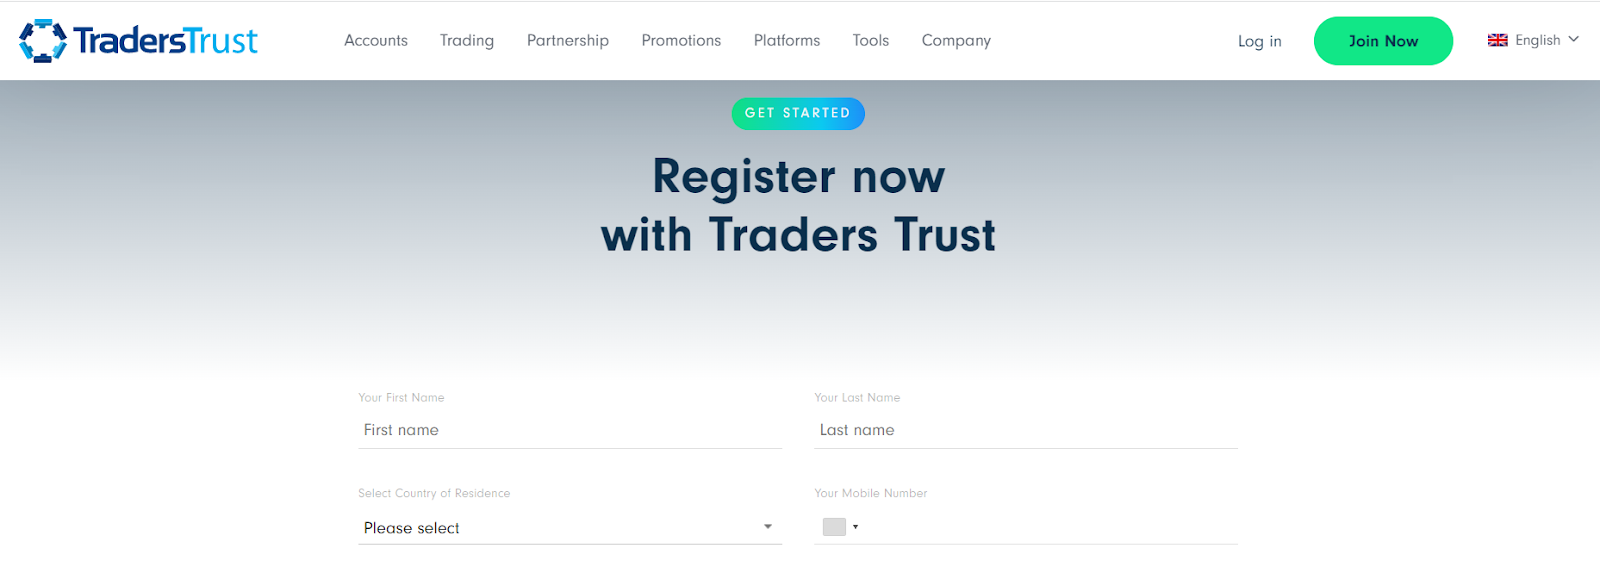 Traders Trust Recensione - Registrazione